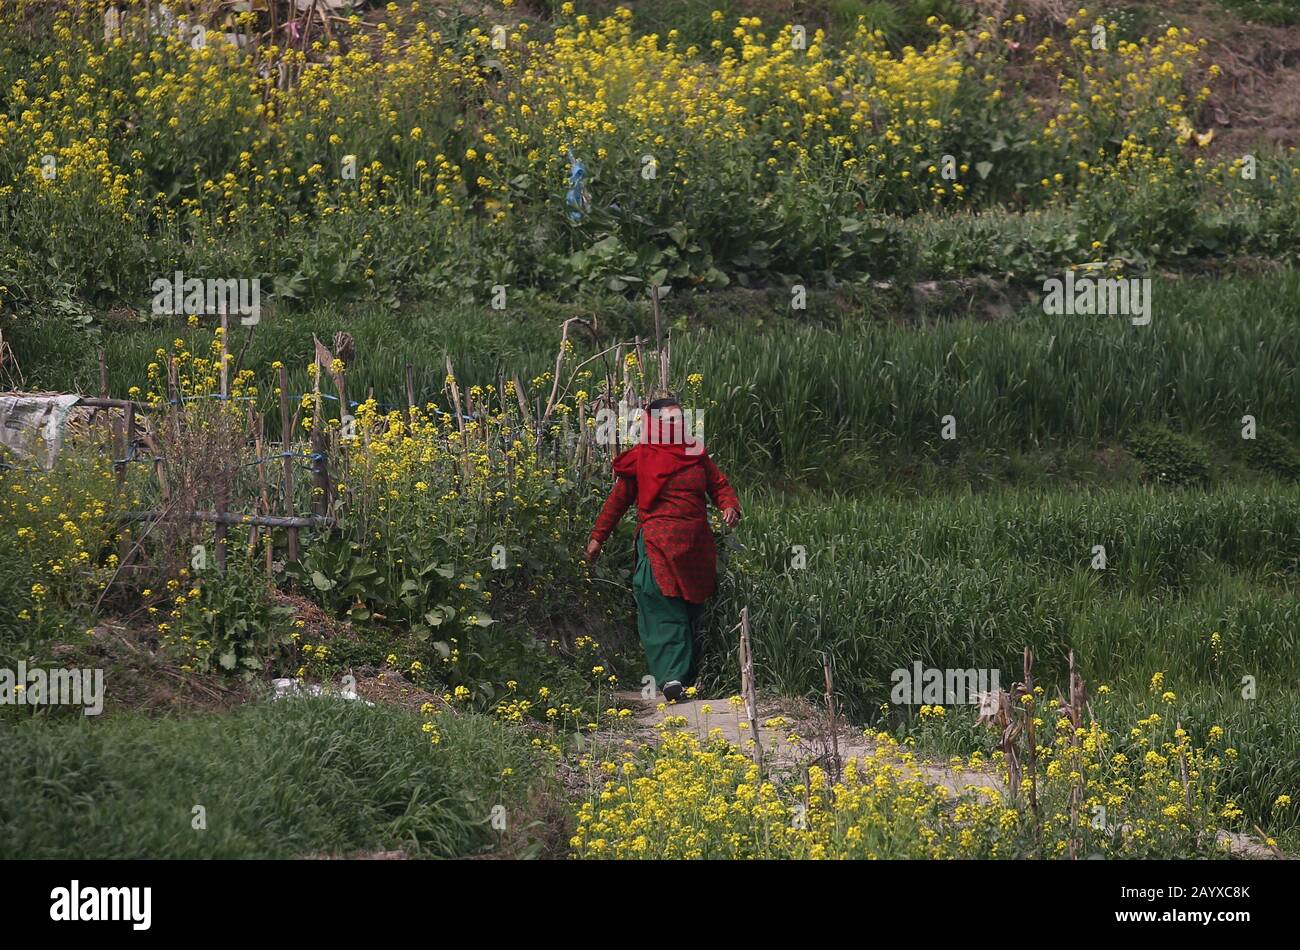 Bhaktapur, Nepal. Februar 2020. Eine Frau, die ihr Gesicht bedeckt, läuft auf einem Feld in der Nähe der Quarantänezone in Bhaktapur, Nepal. Nepali-Bürger, die aus Wuhan, einer chinesischen Stadt, evakuiert werden, das Epizentrum des neuartigen Coronavirus, der jetzt COVID-19-Ausbruch, werden auf Symptome der Infektion in der Kharipati-Quarantänezone in Bhaktapur überwacht. Credit: Sunil Sharma/ZUMA Wire/Alamy Live News Stockfoto